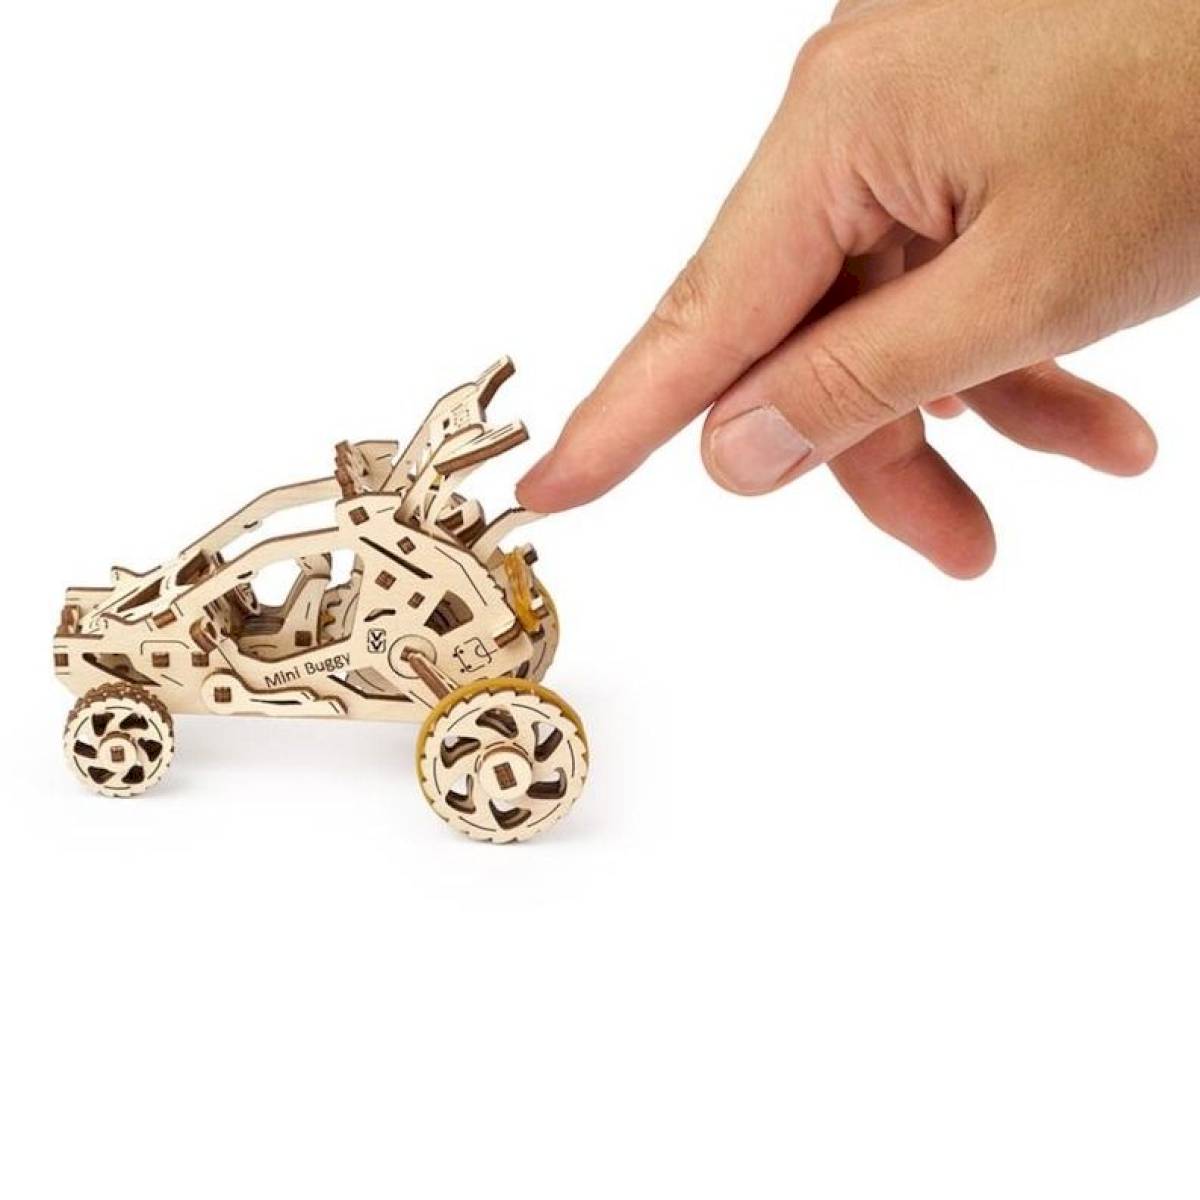 Maquette 3D - Mini Buggy